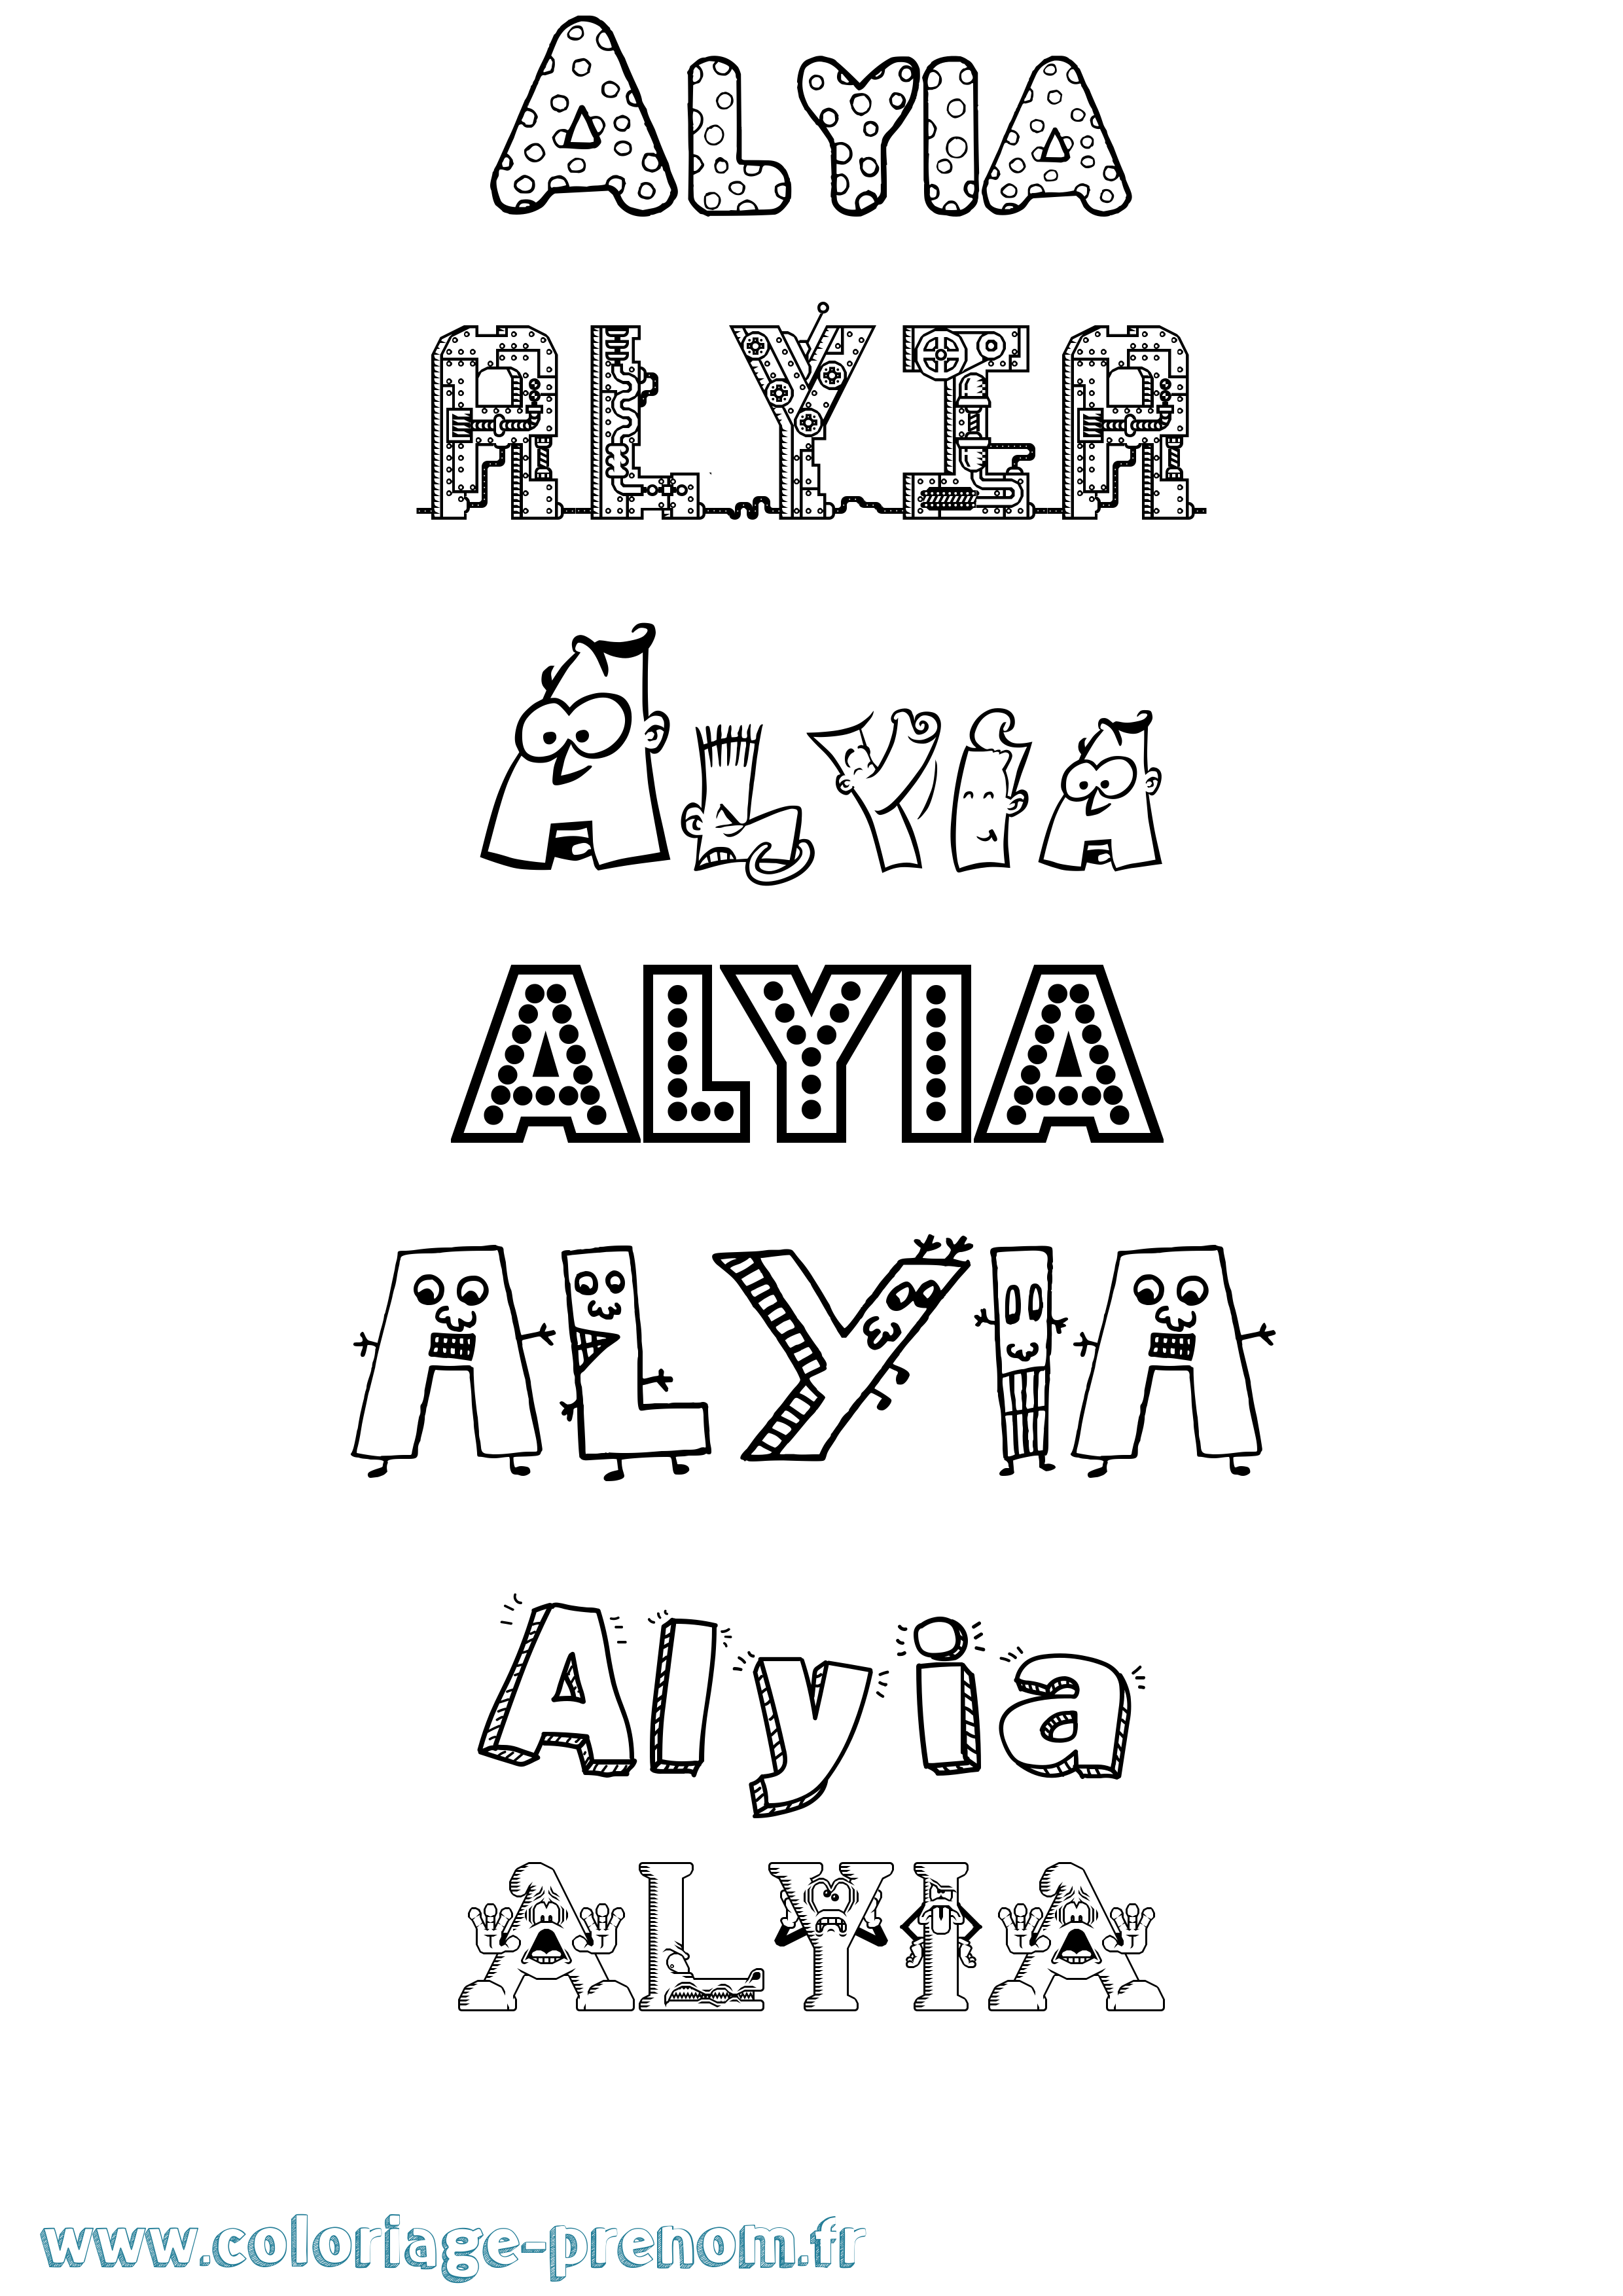 Coloriage prénom Alyia Fun